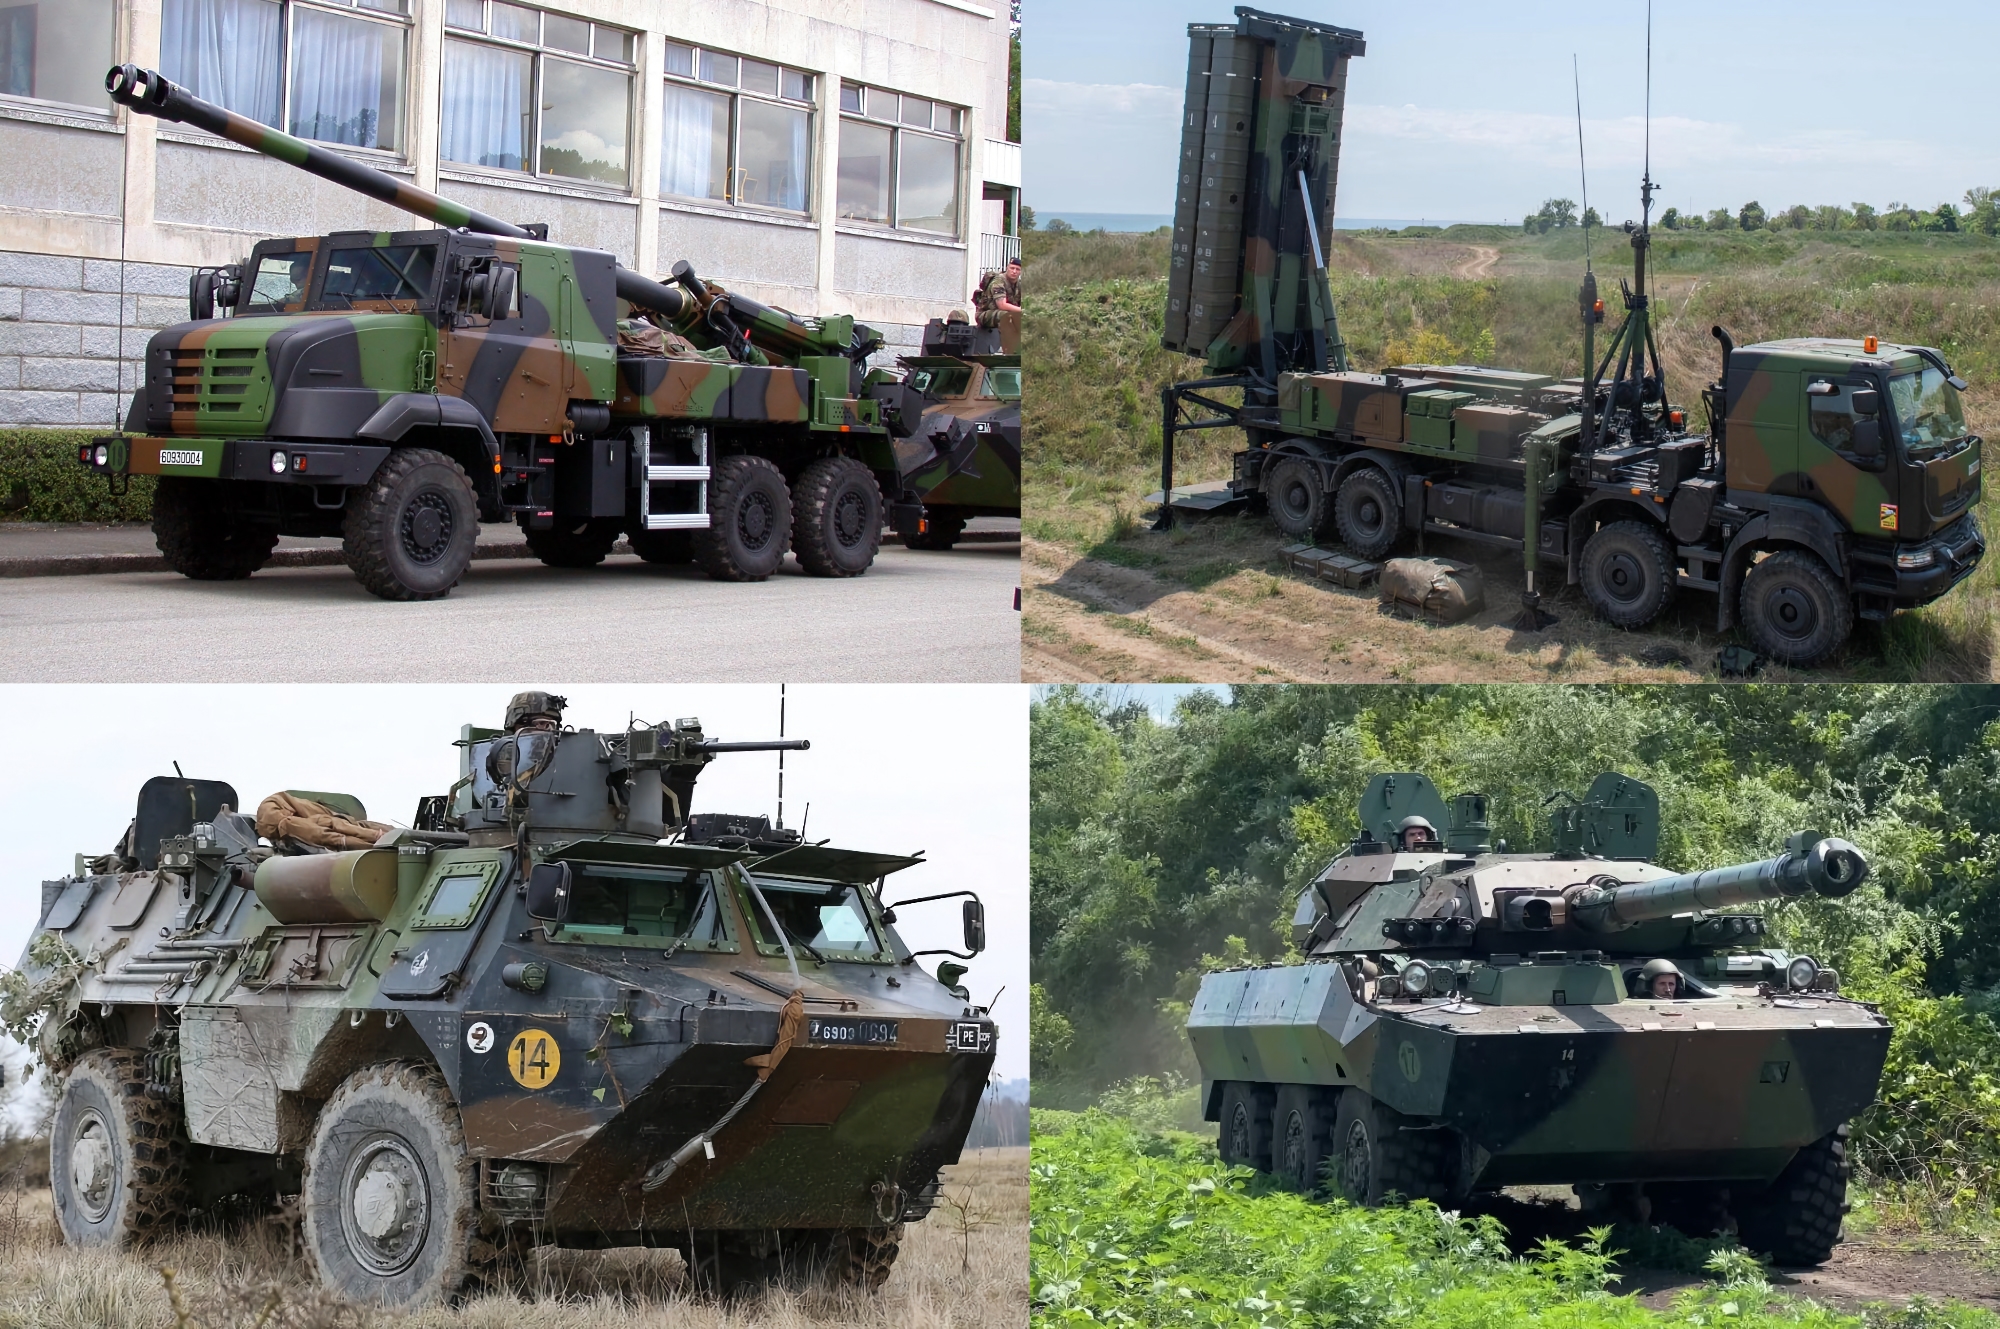 Sistemas de artillería Caesar, SAM SAMP/T, tanques de ruedas AMX10 RC y vehículos blindados de transporte de tropas VAB: Francia revela la lista detallada de la ayuda militar a Ucrania